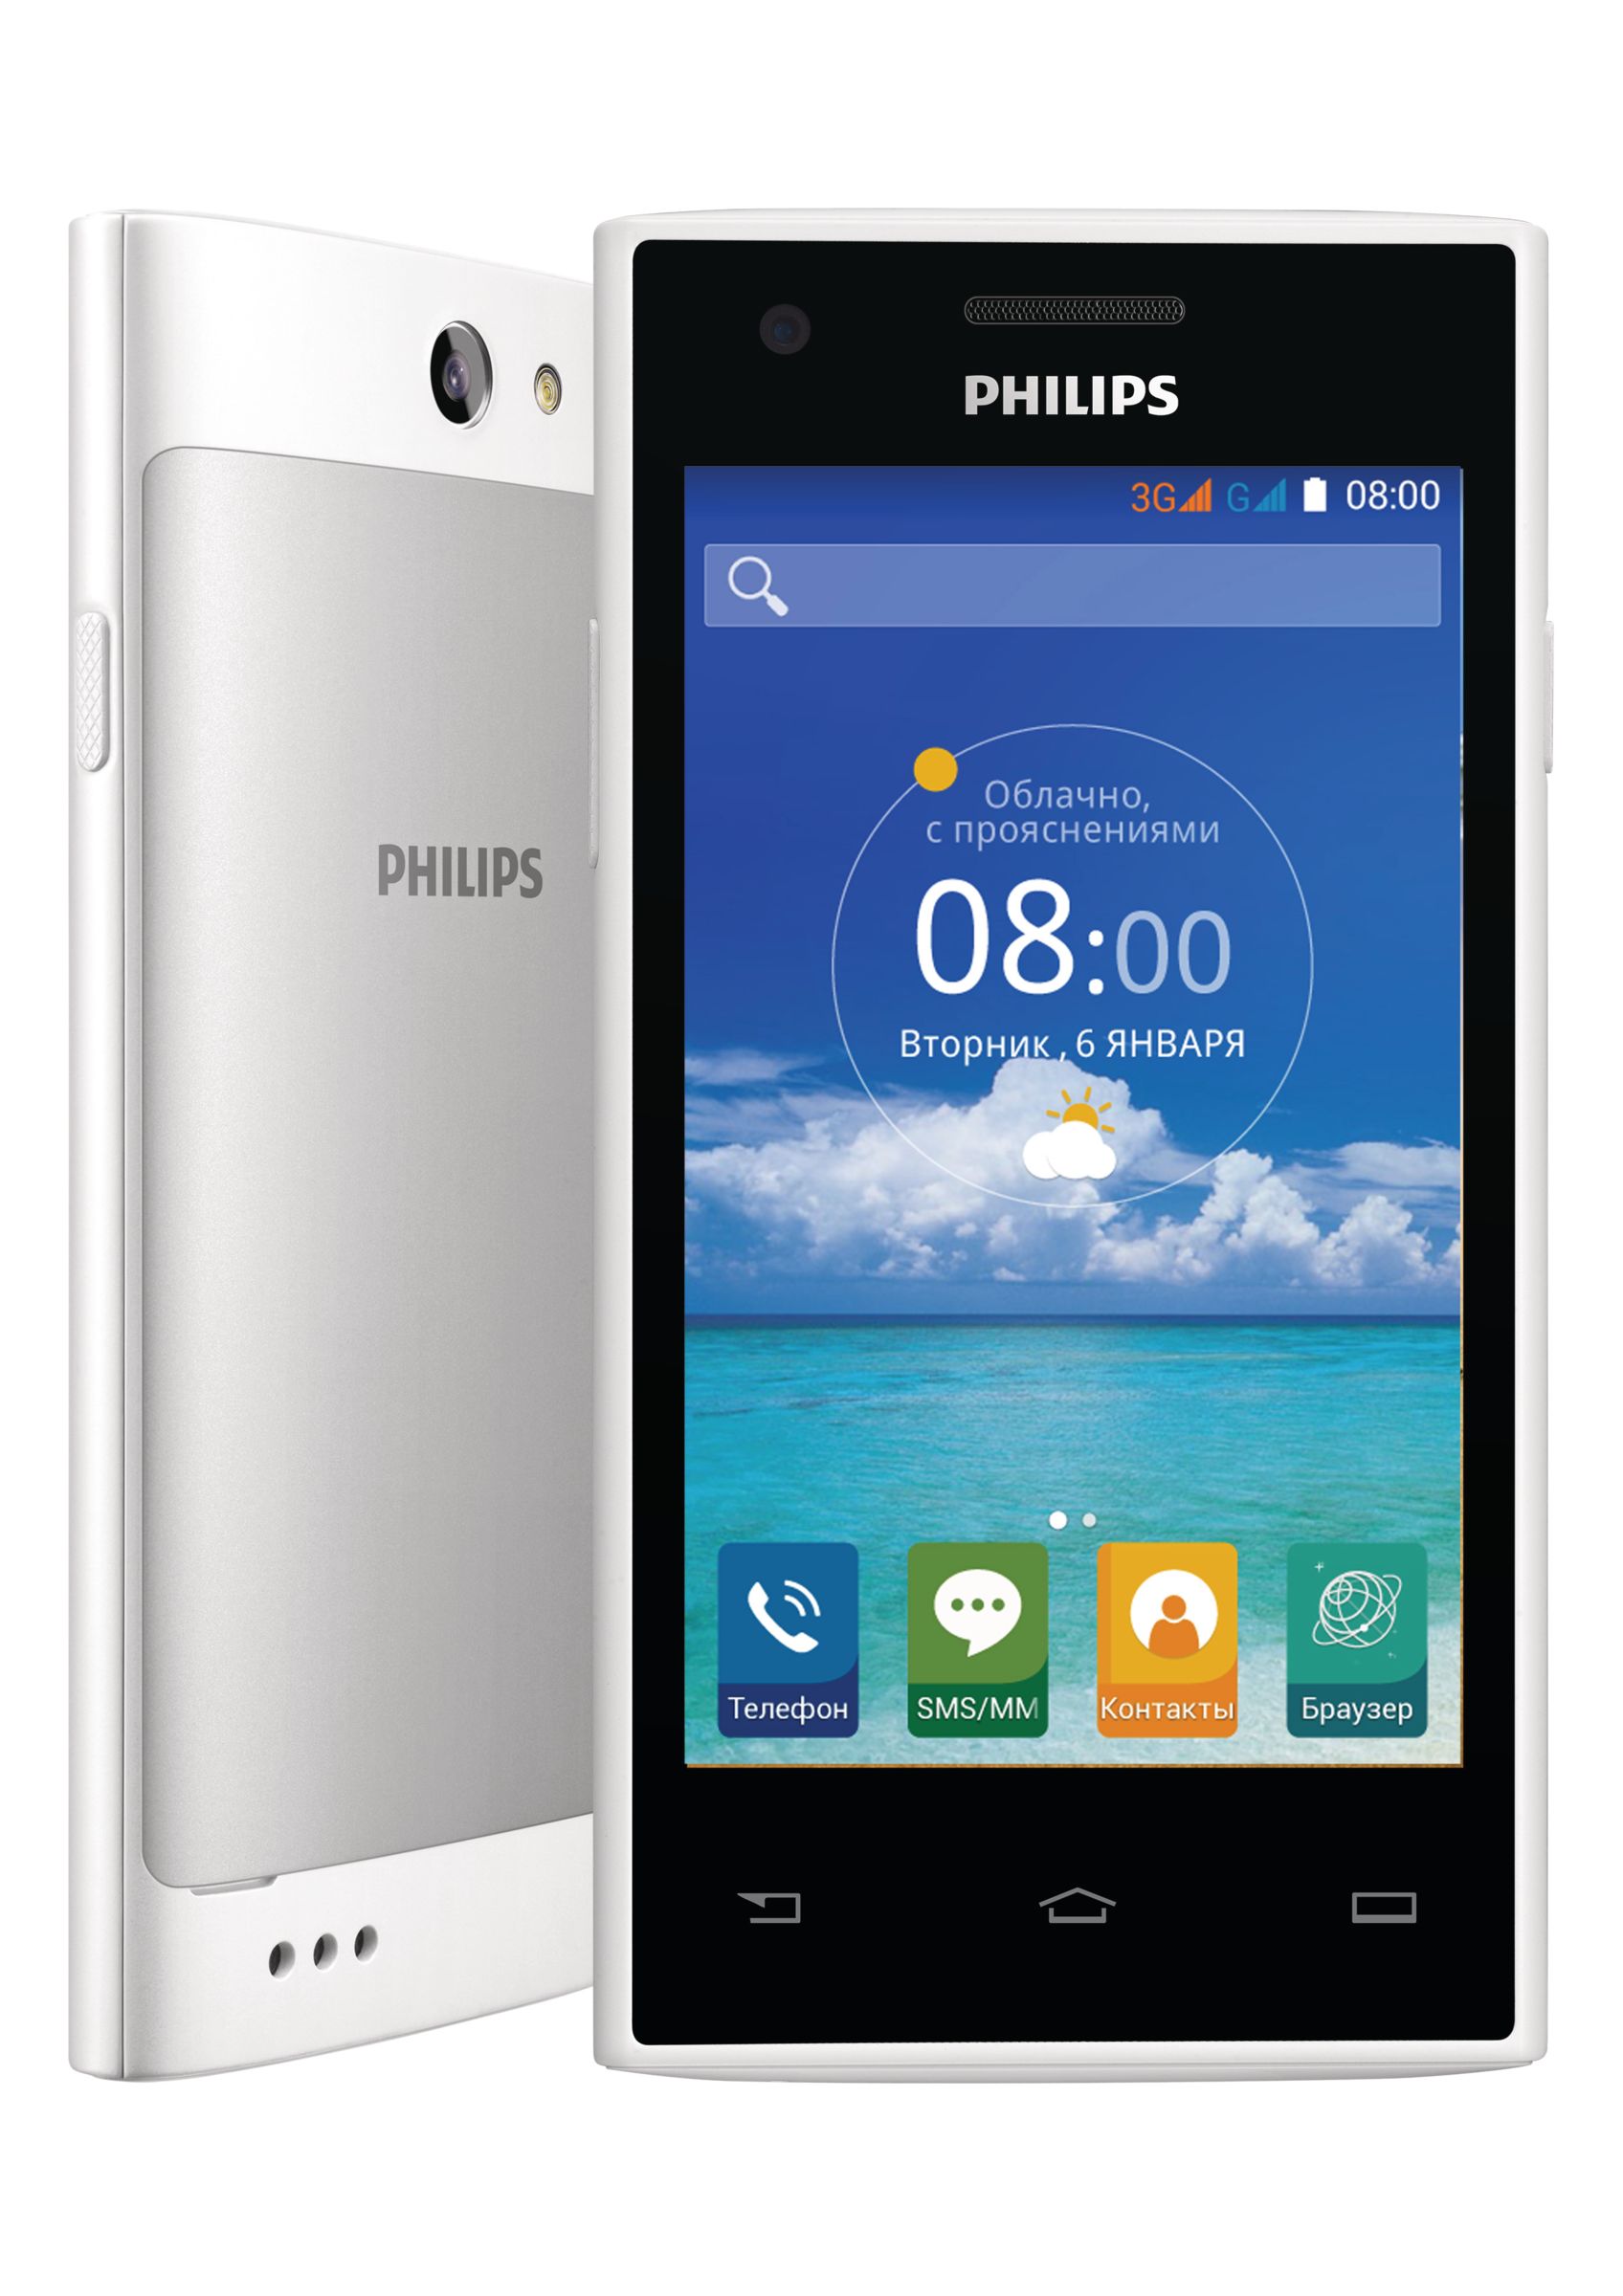 Philips 4g. Philips Xenium s309. Филипс с 309. Philips s309 Black. Филипс Xenium белый смартфон.